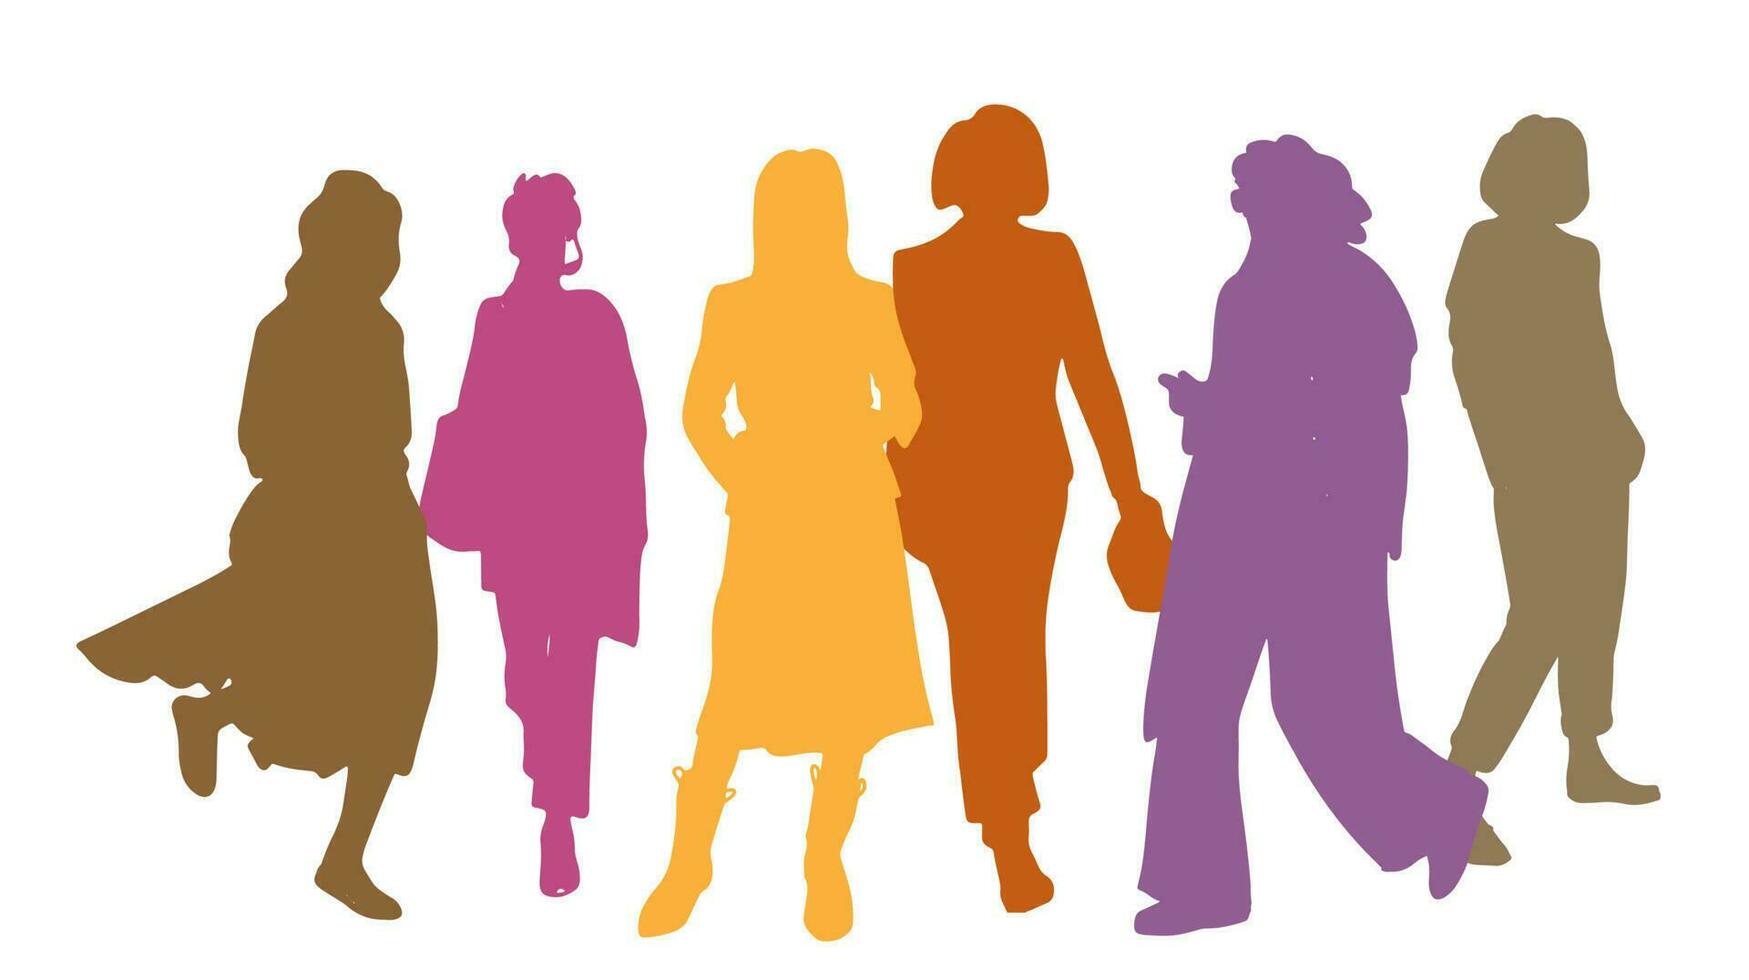 siluetas vectoriales mujeres de pie, diferentes poses, negocios, personas, grupo, multicolor, aisladas en fondo blanco vector